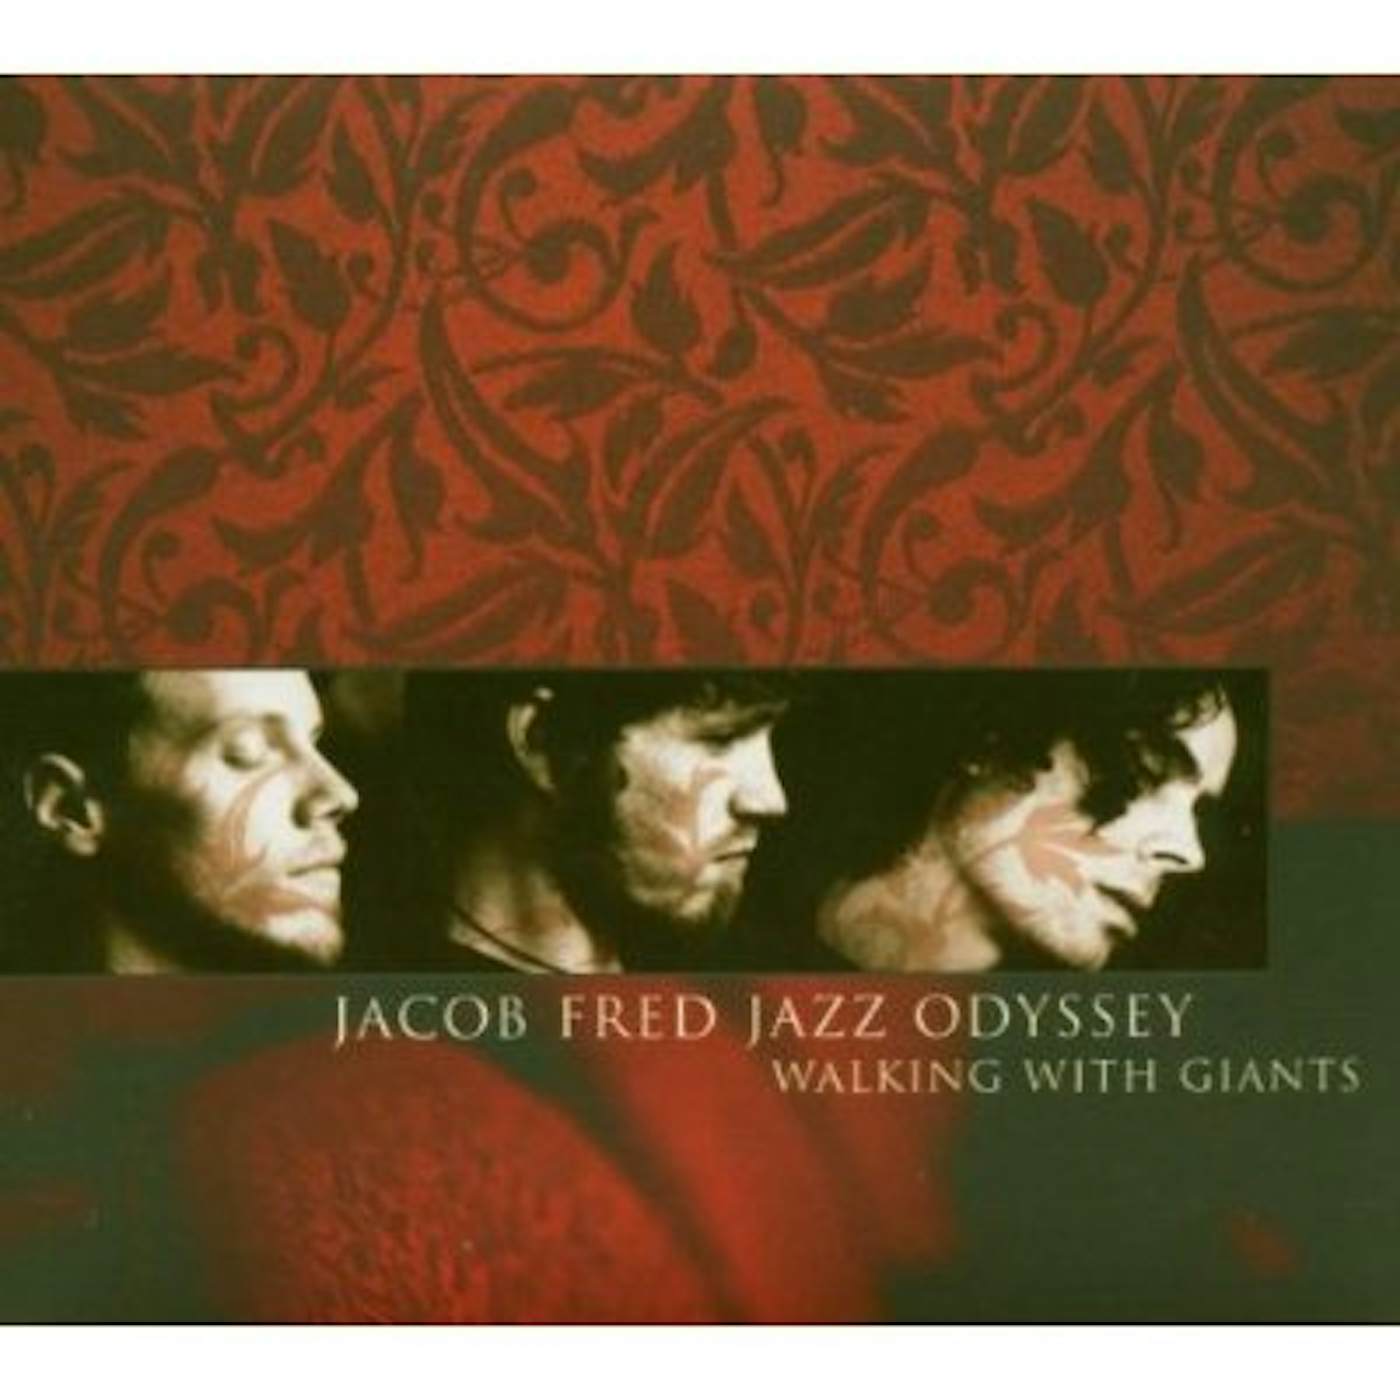 Jacob Fred Jazz Odyssey WALKING WITH GIANTS CD